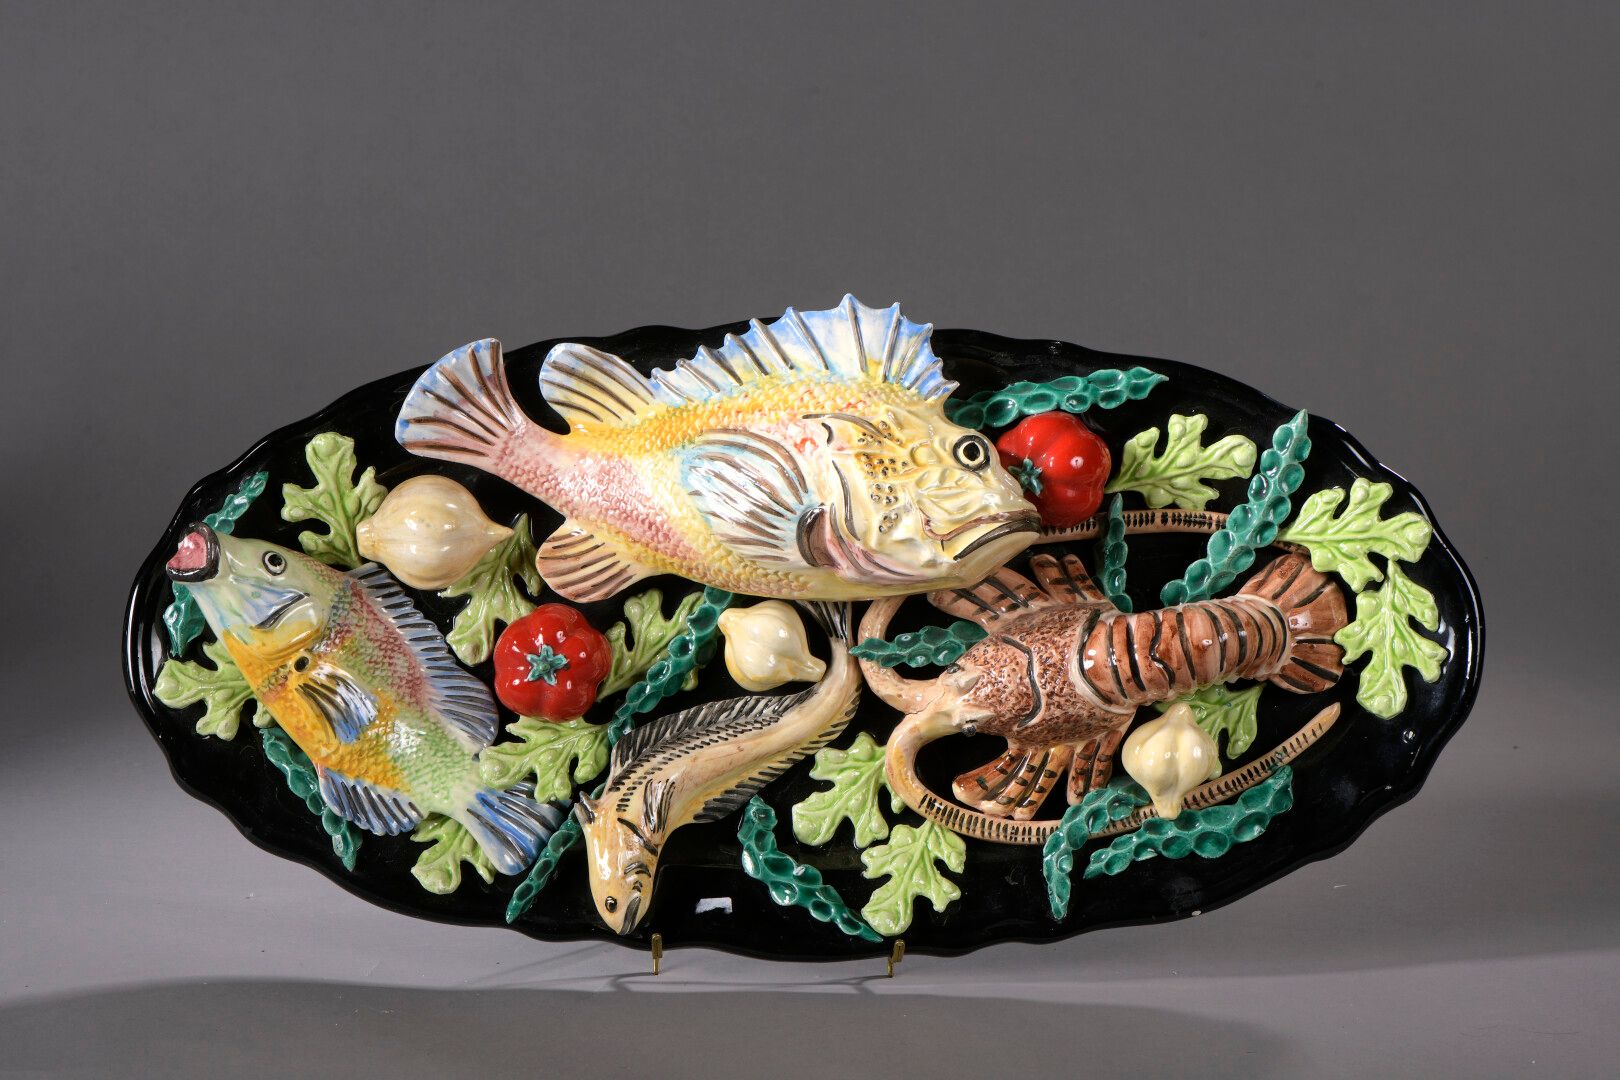 Null 法国的戴安娜殿下，符腾堡公爵夫人 (生于1940年)

多色陶瓷盘，装饰有鱼和龙虾。

小事故和缺失的部分。

L. 64 cm